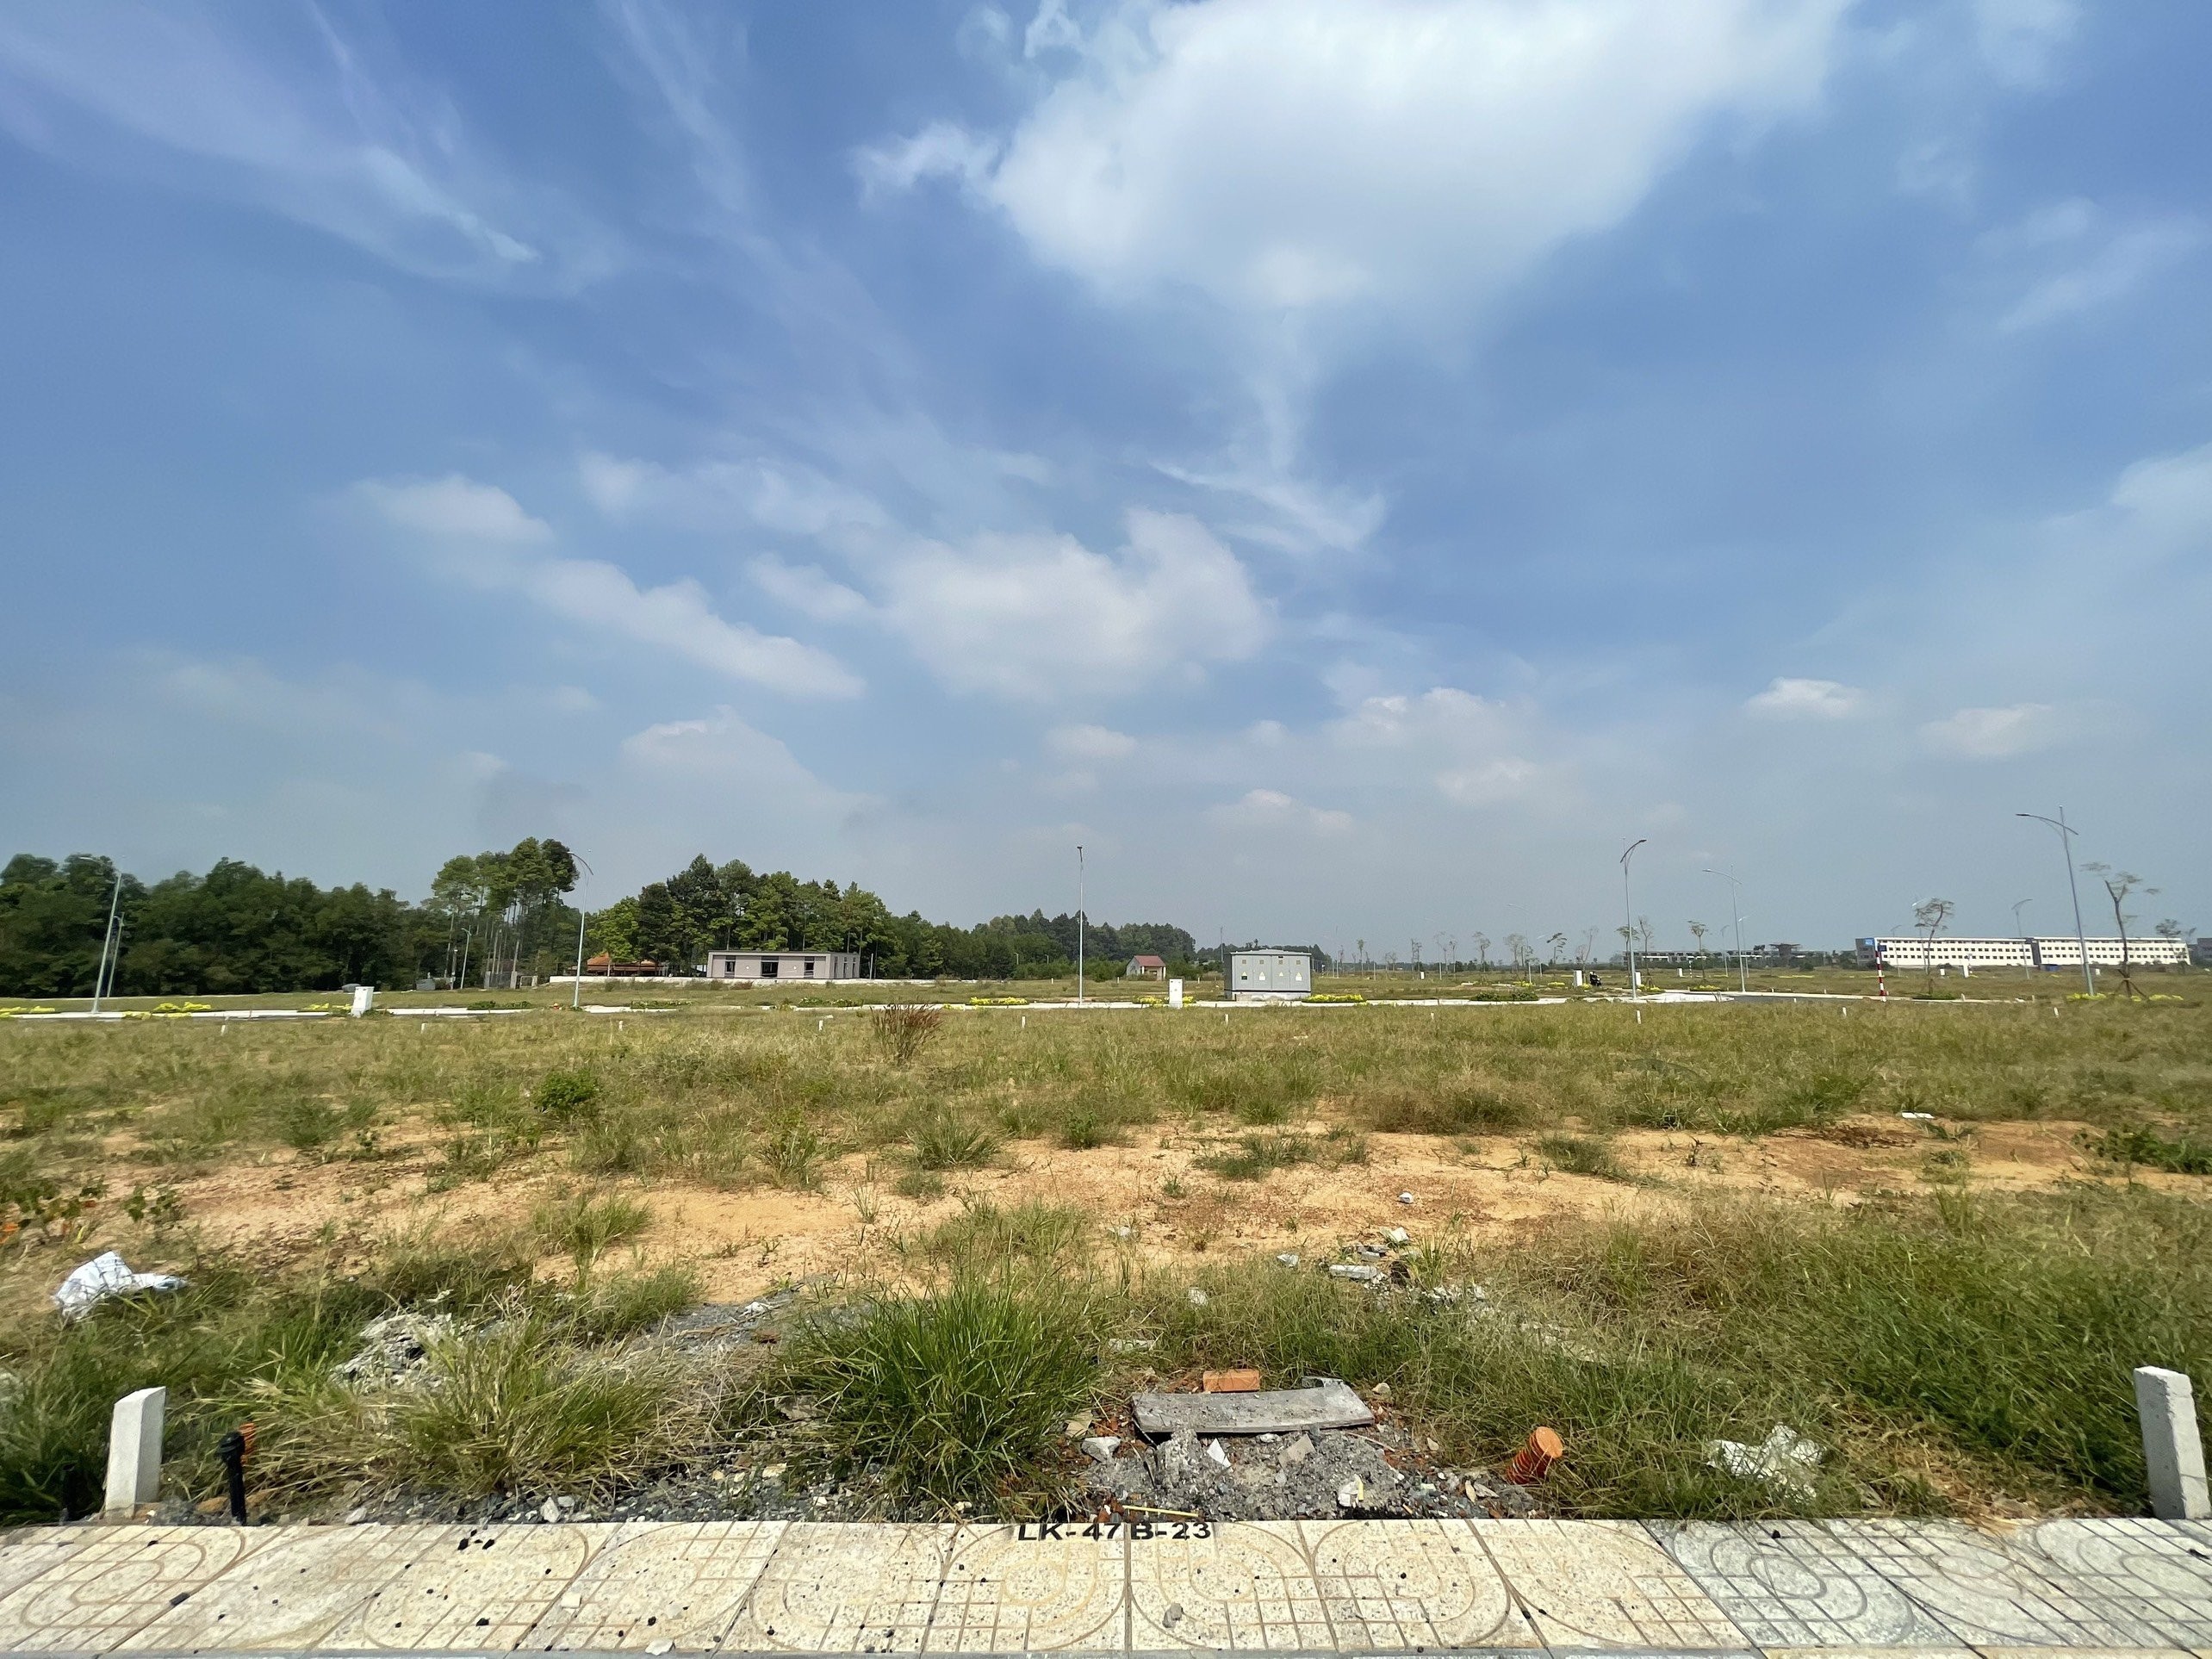 

Dự án Gem Sky World gần sân bay Long Thành được rao bán rầm rộ với giá 5 tỷ/căn trong khi thực tế chỉ là khu đất trống.

